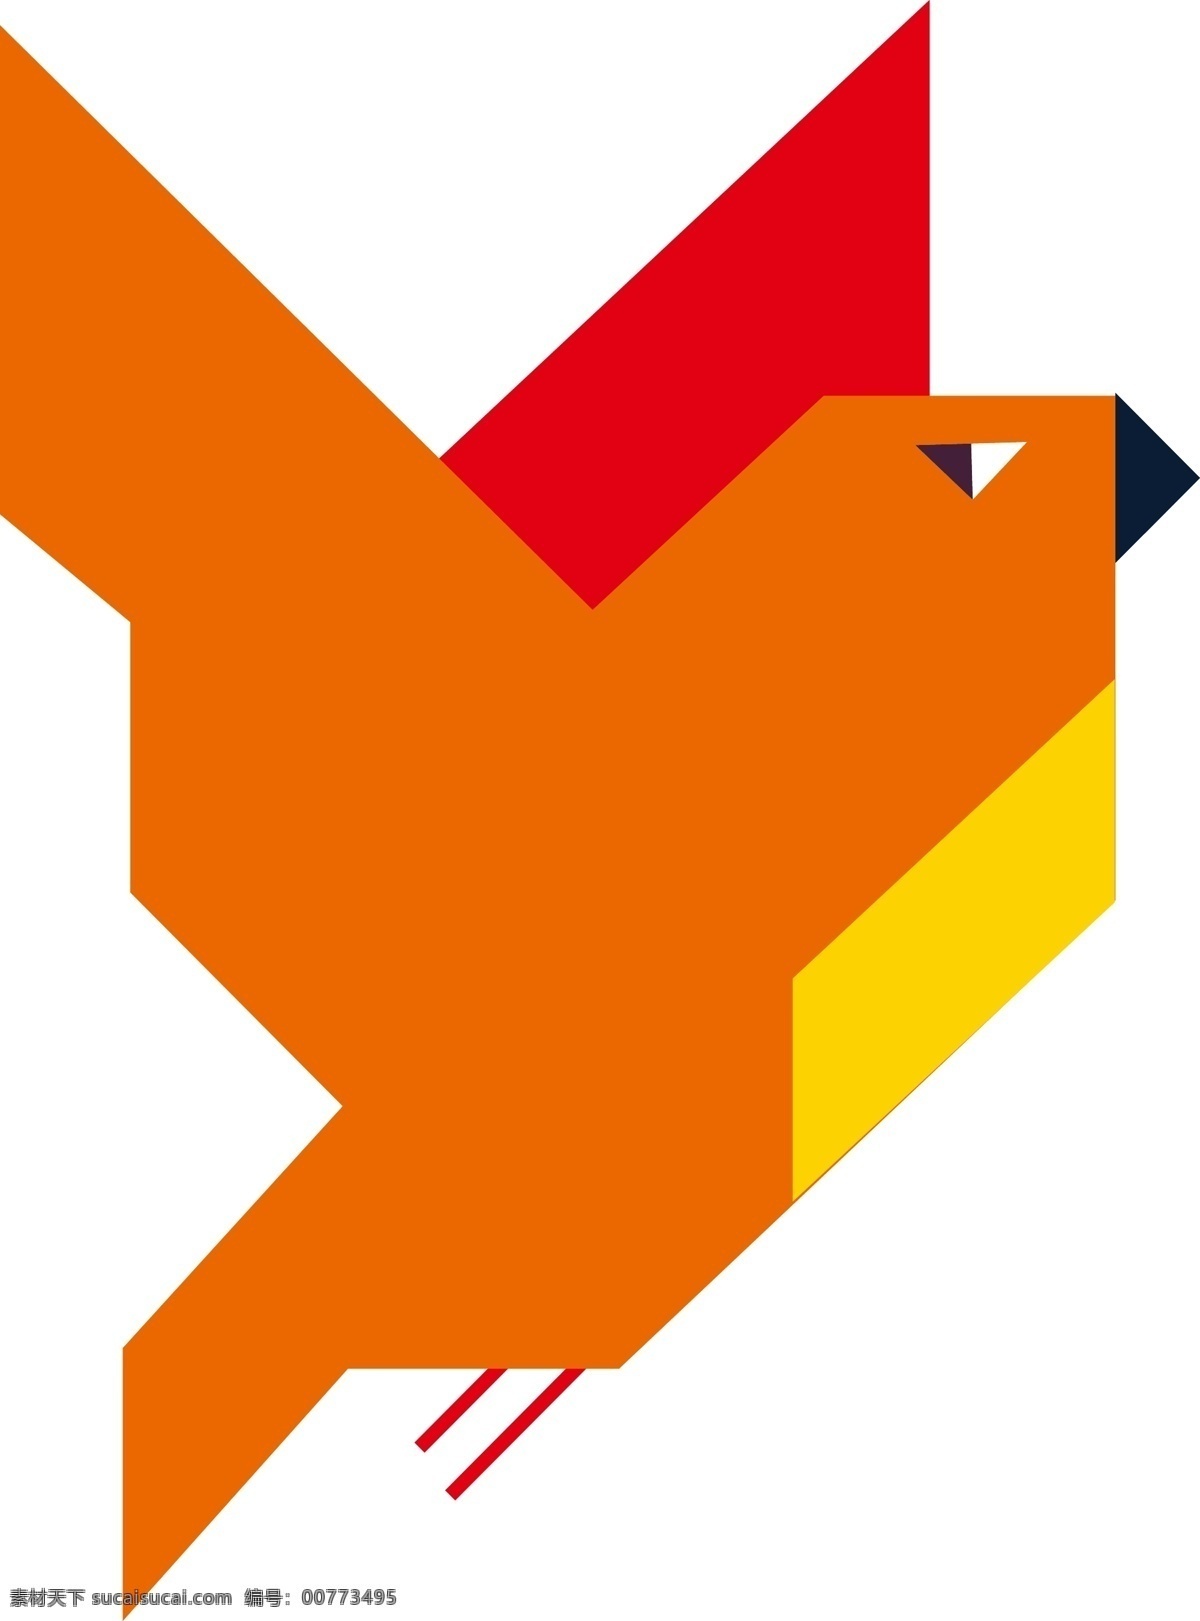 国际 爱鸟 日 鸟类 图标 鸟 鸟logo 鸟元素 鸟类元素 鸟图标 鸟类图标 矢量鸟 矢量鸟类 矢量动物 元素